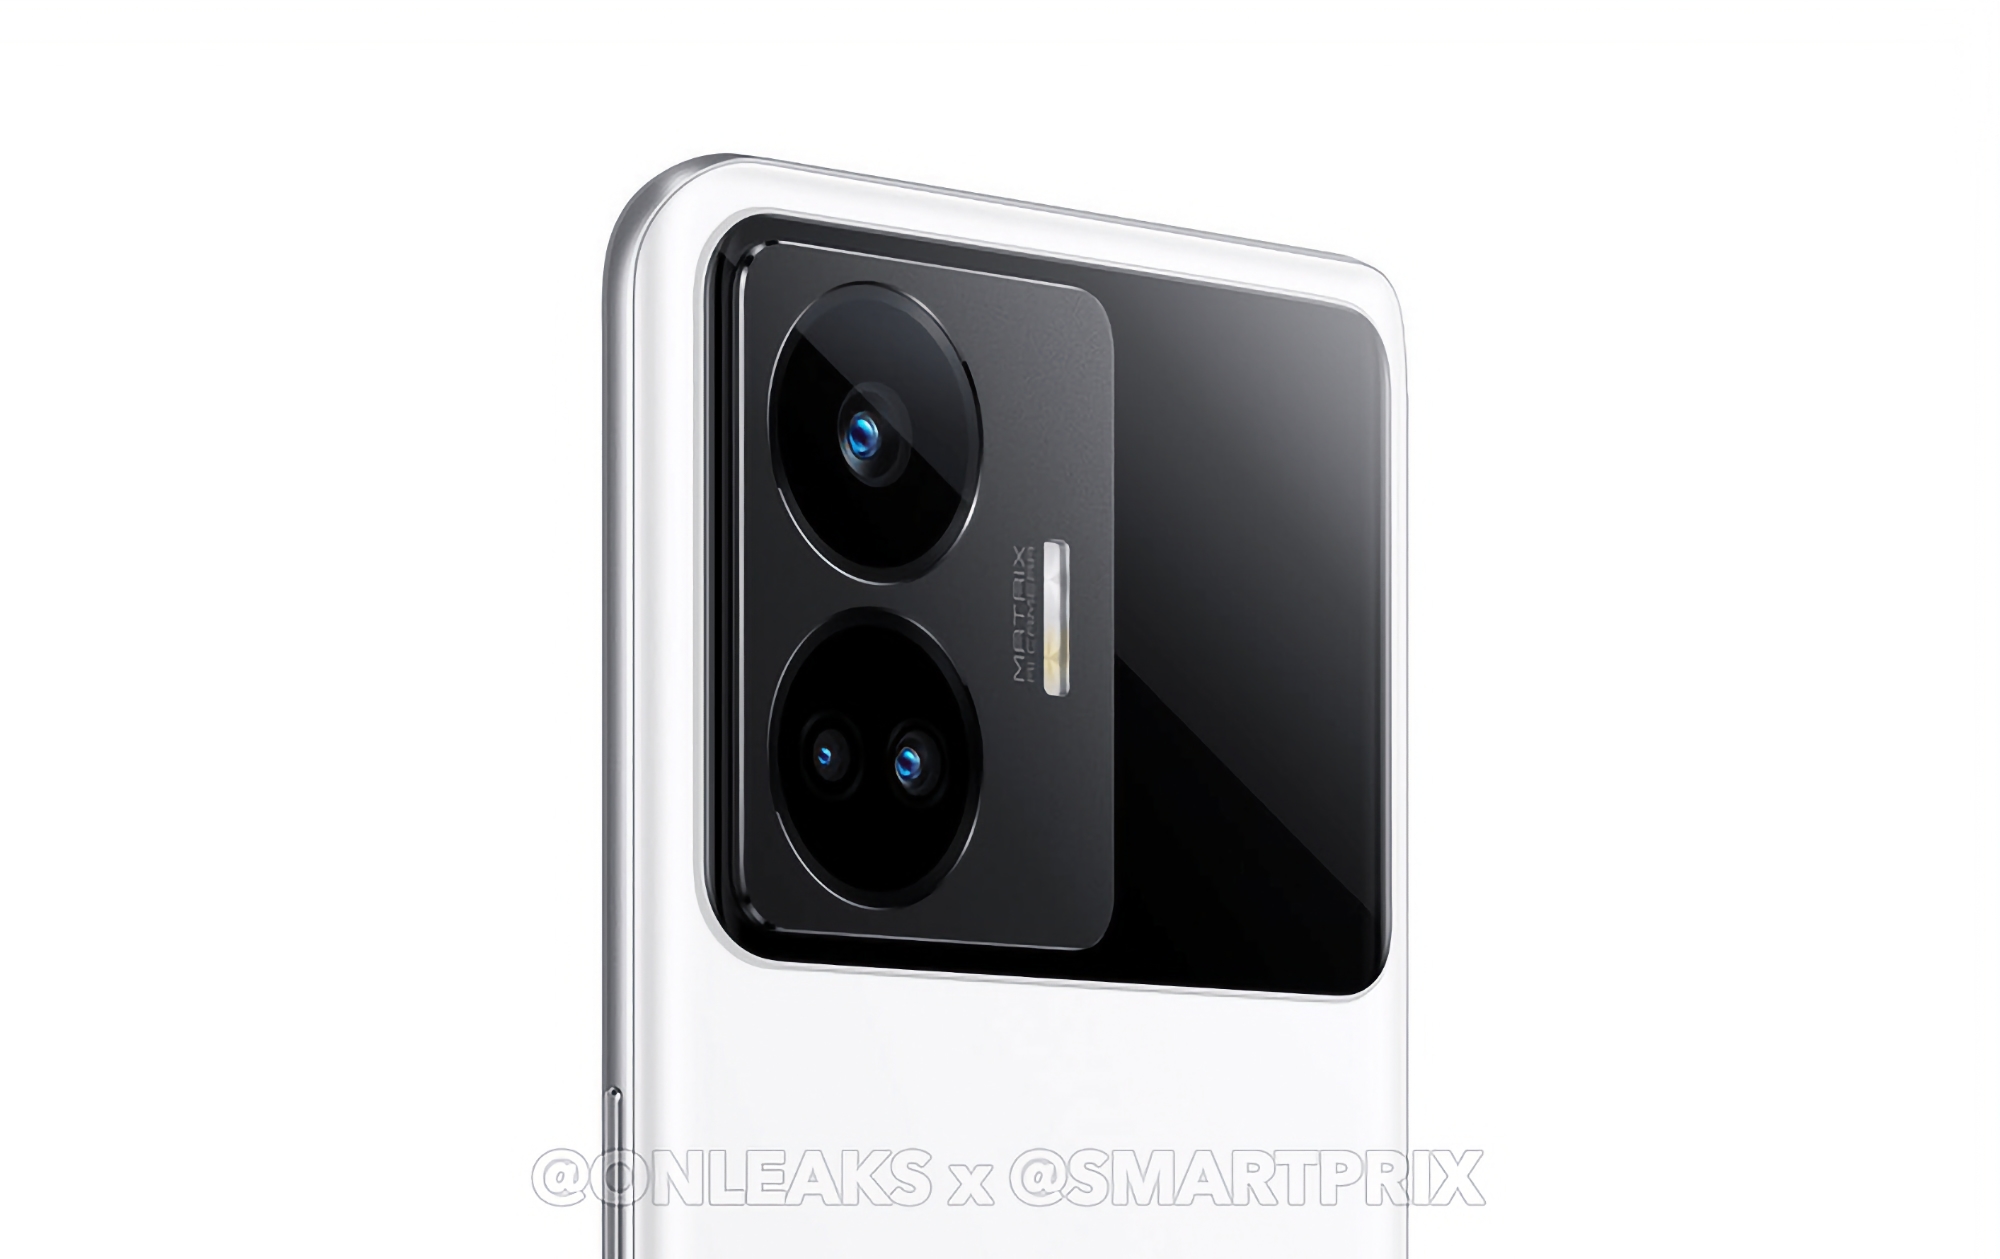 Snapdragon 8+ Gen 1 Chip, RGB-Hintergrundbeleuchtung und 240W Ladeleistung: Insider verrät Specs des realme GT Neo 5